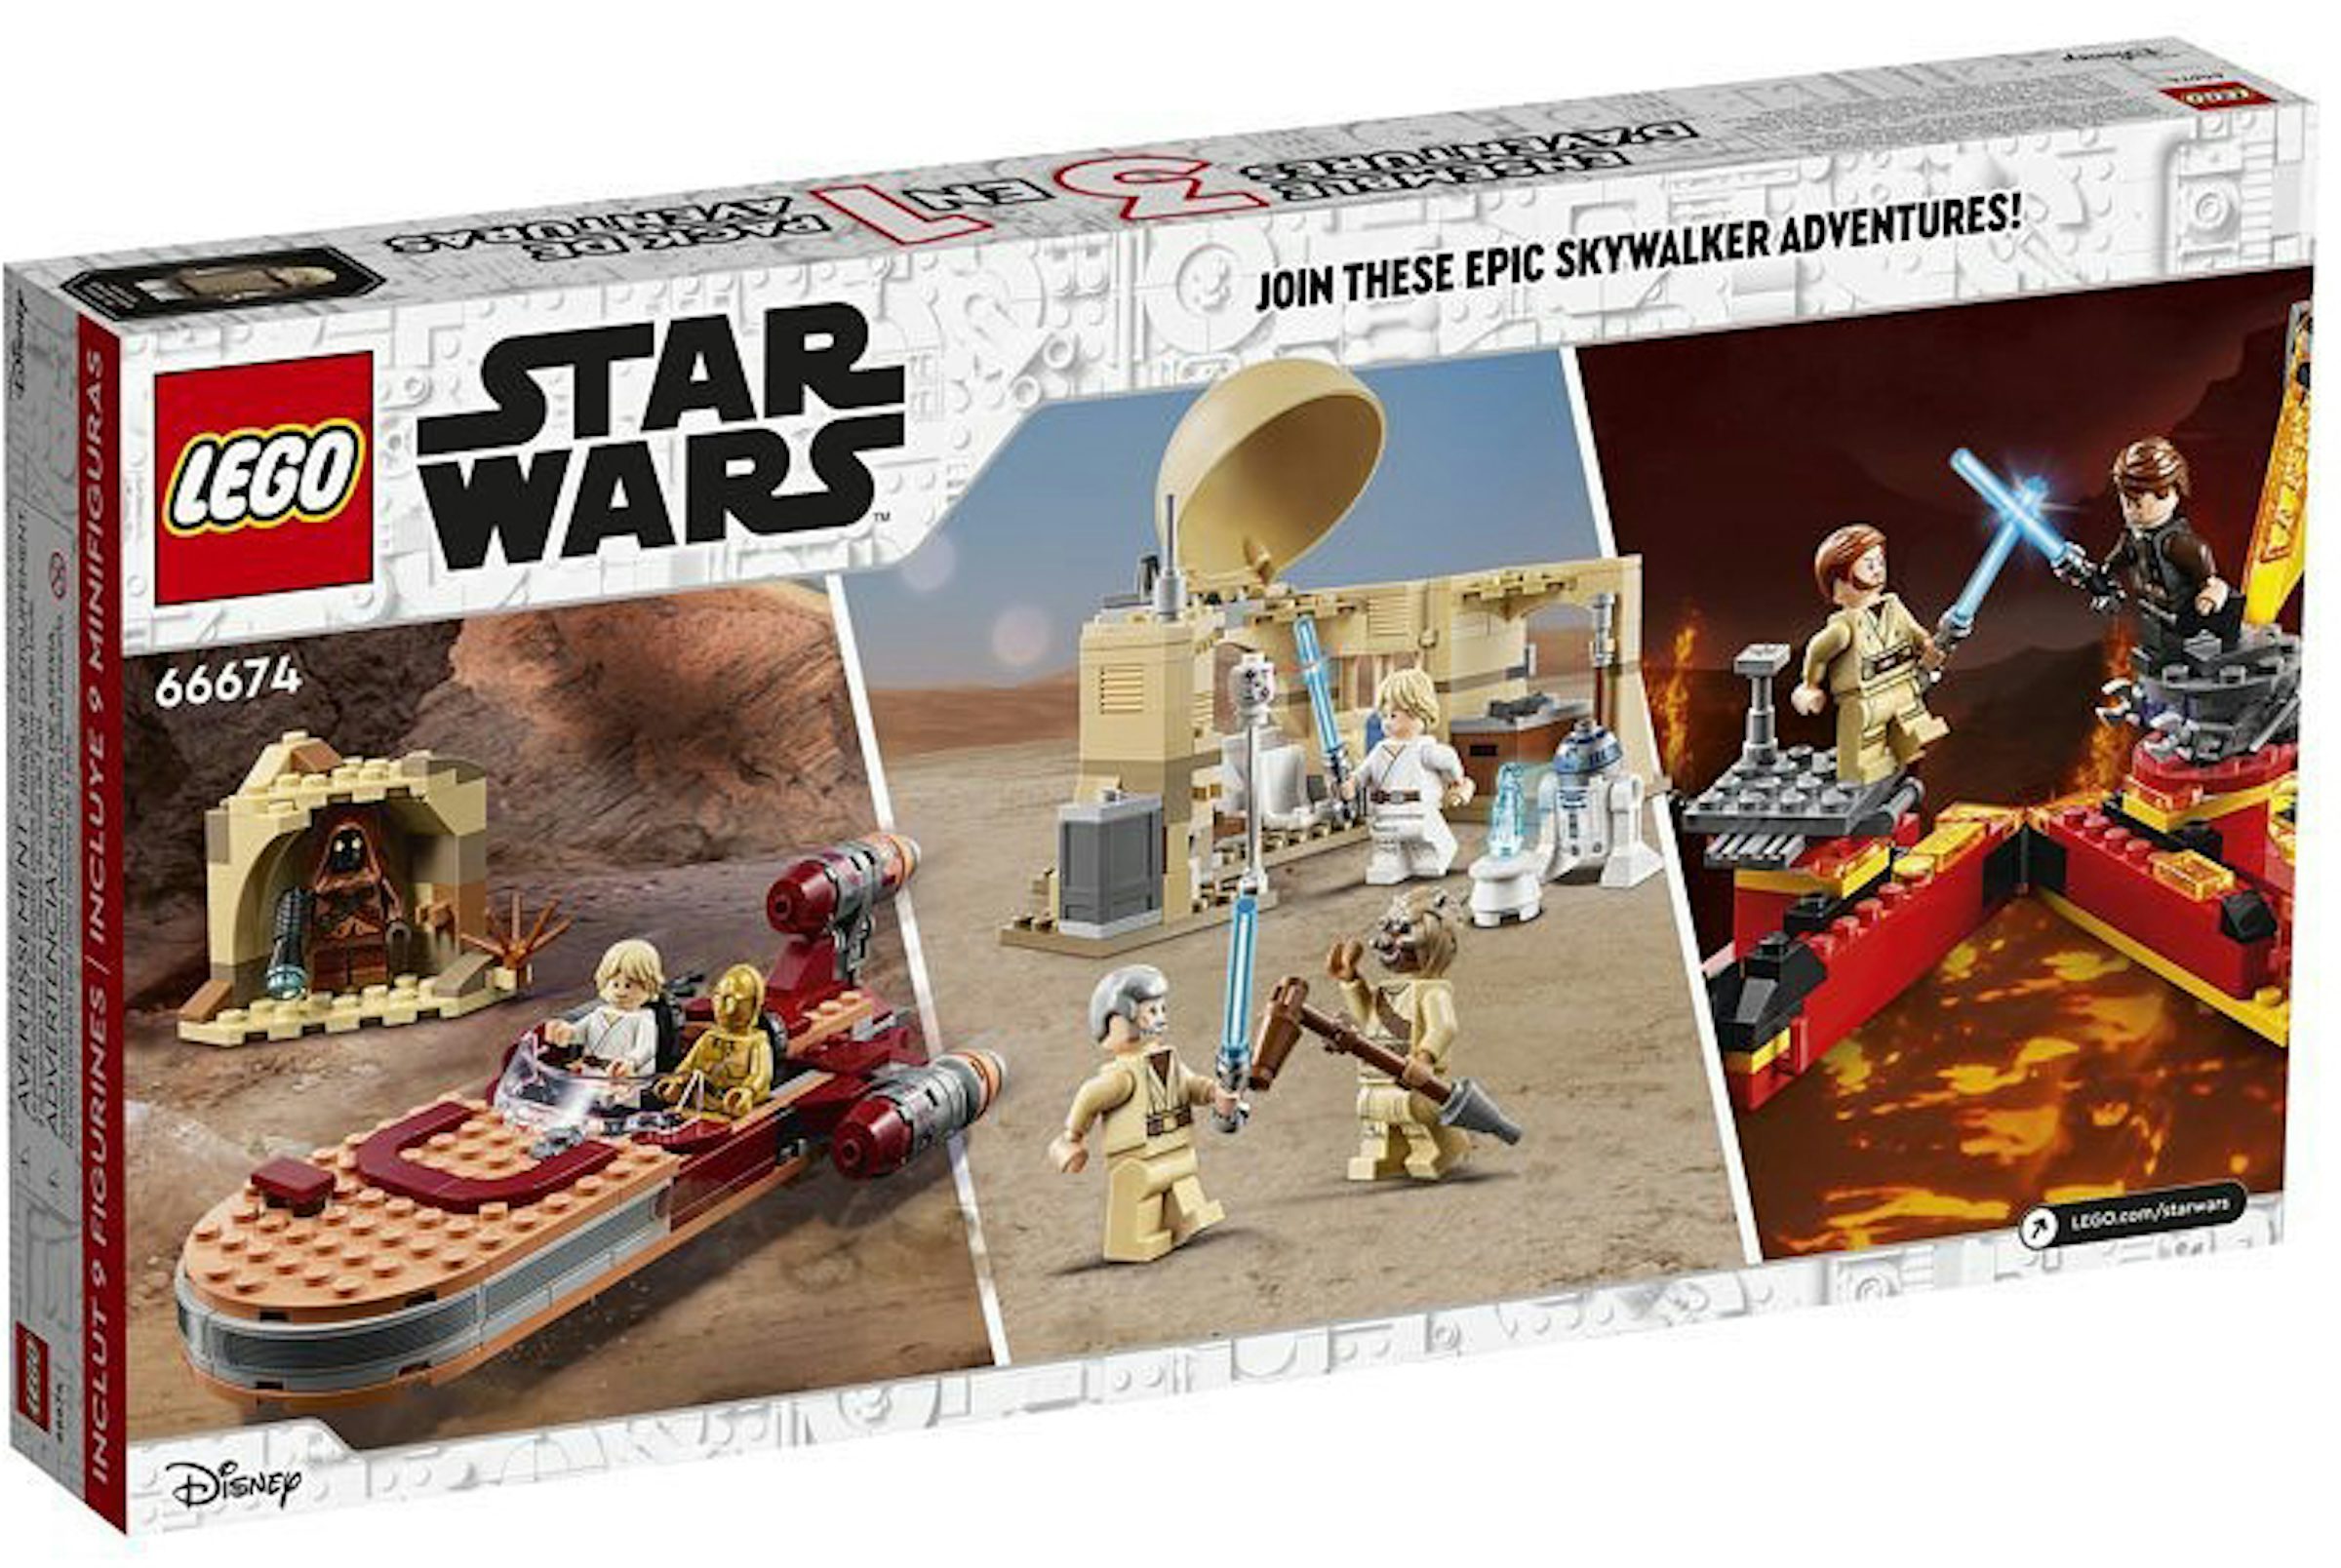 LEGO Star Wars Skywalker Adventures 3in1 Walmart Exclusive Set 66674 - FW21  - GB